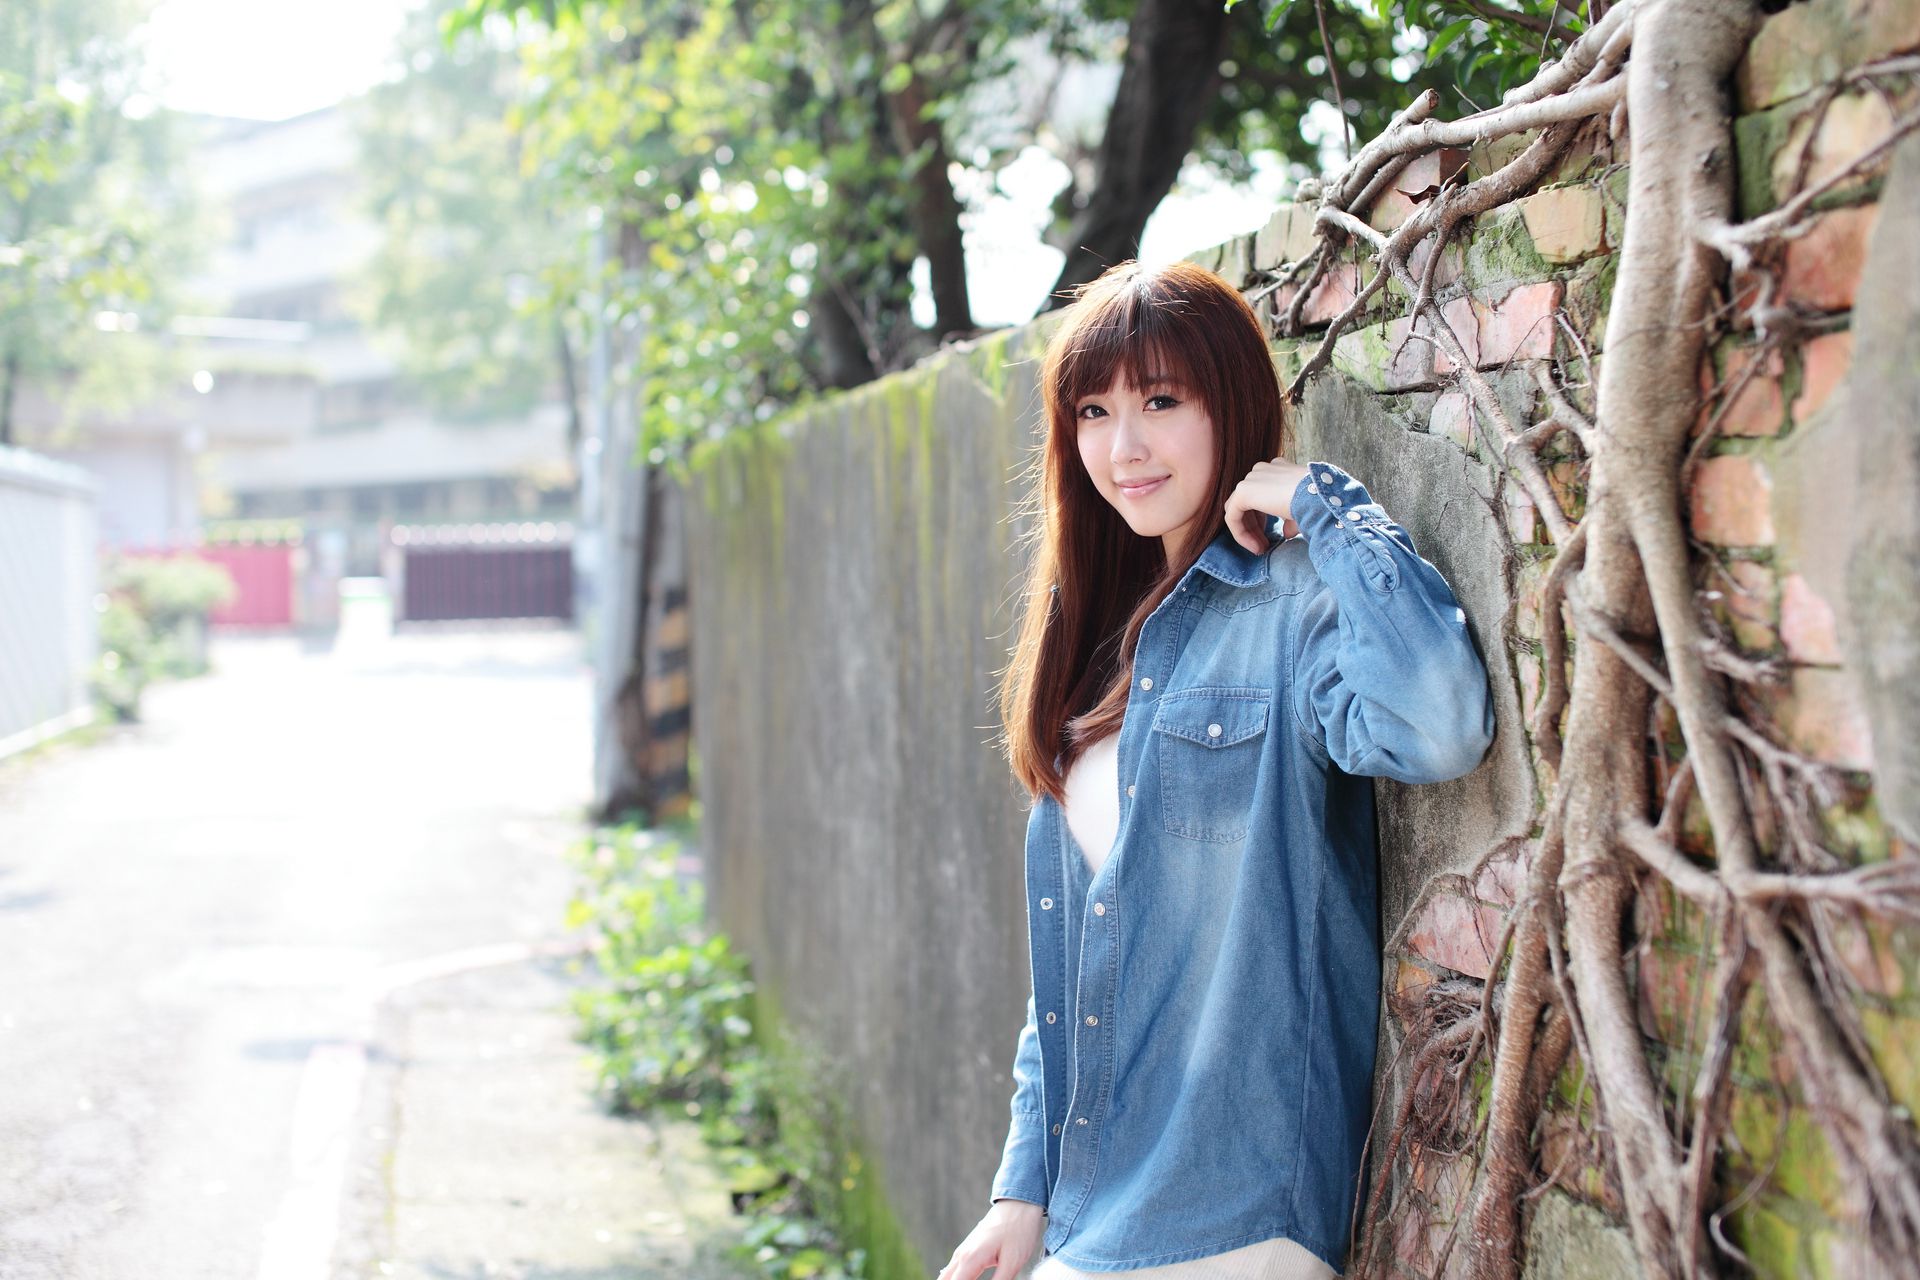 台湾模特晶晶(Kila) - 时尚长腿美女甜美街拍写真集